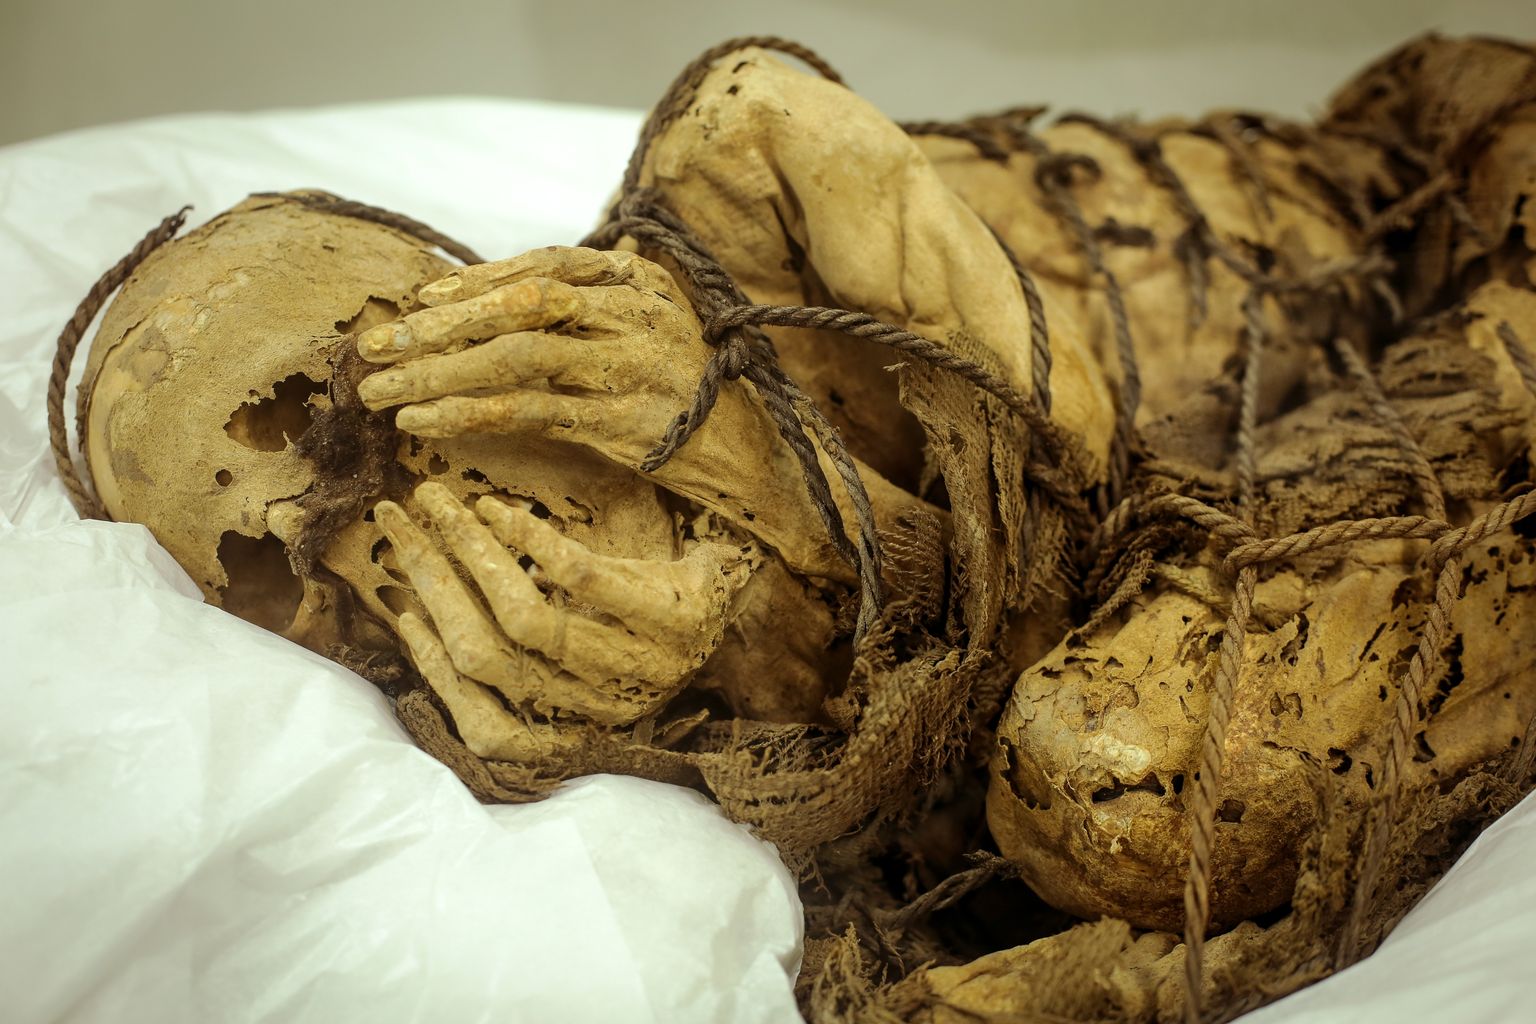 Peruust Cajamarquillast leitud kinniköidetud muumia. Tegemist on mehega, kes maeti umbes 1000 aastat tagasi